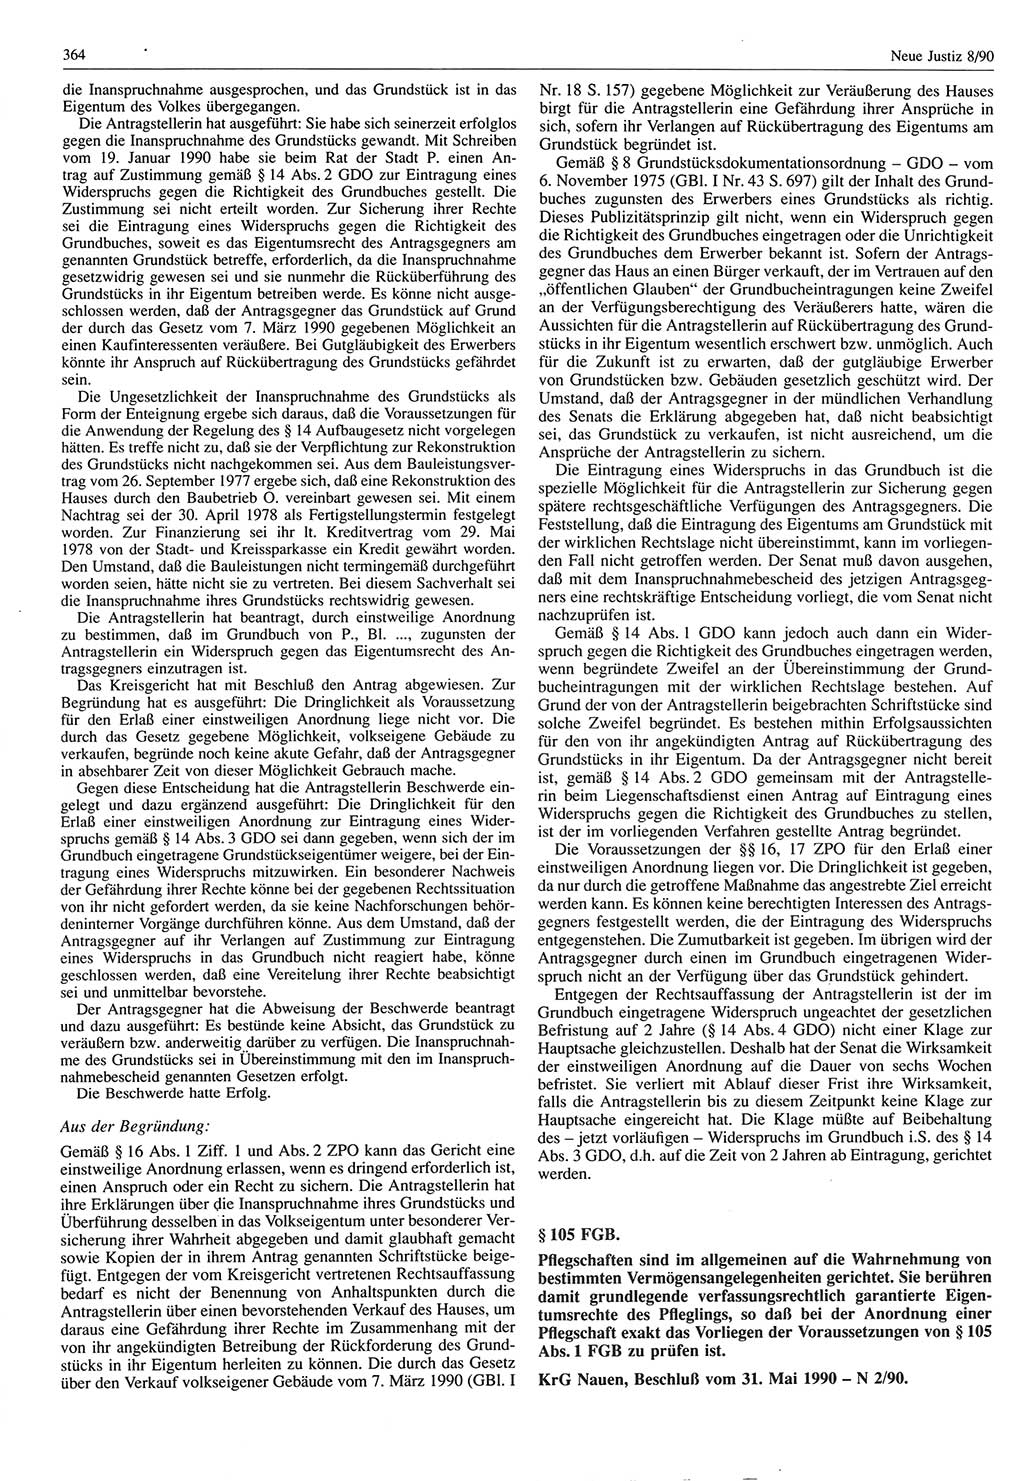 Neue Justiz (NJ), Zeitschrift für Rechtsetzung und Rechtsanwendung [Deutsche Demokratische Republik (DDR)], 44. Jahrgang 1990, Seite 364 (NJ DDR 1990, S. 364)